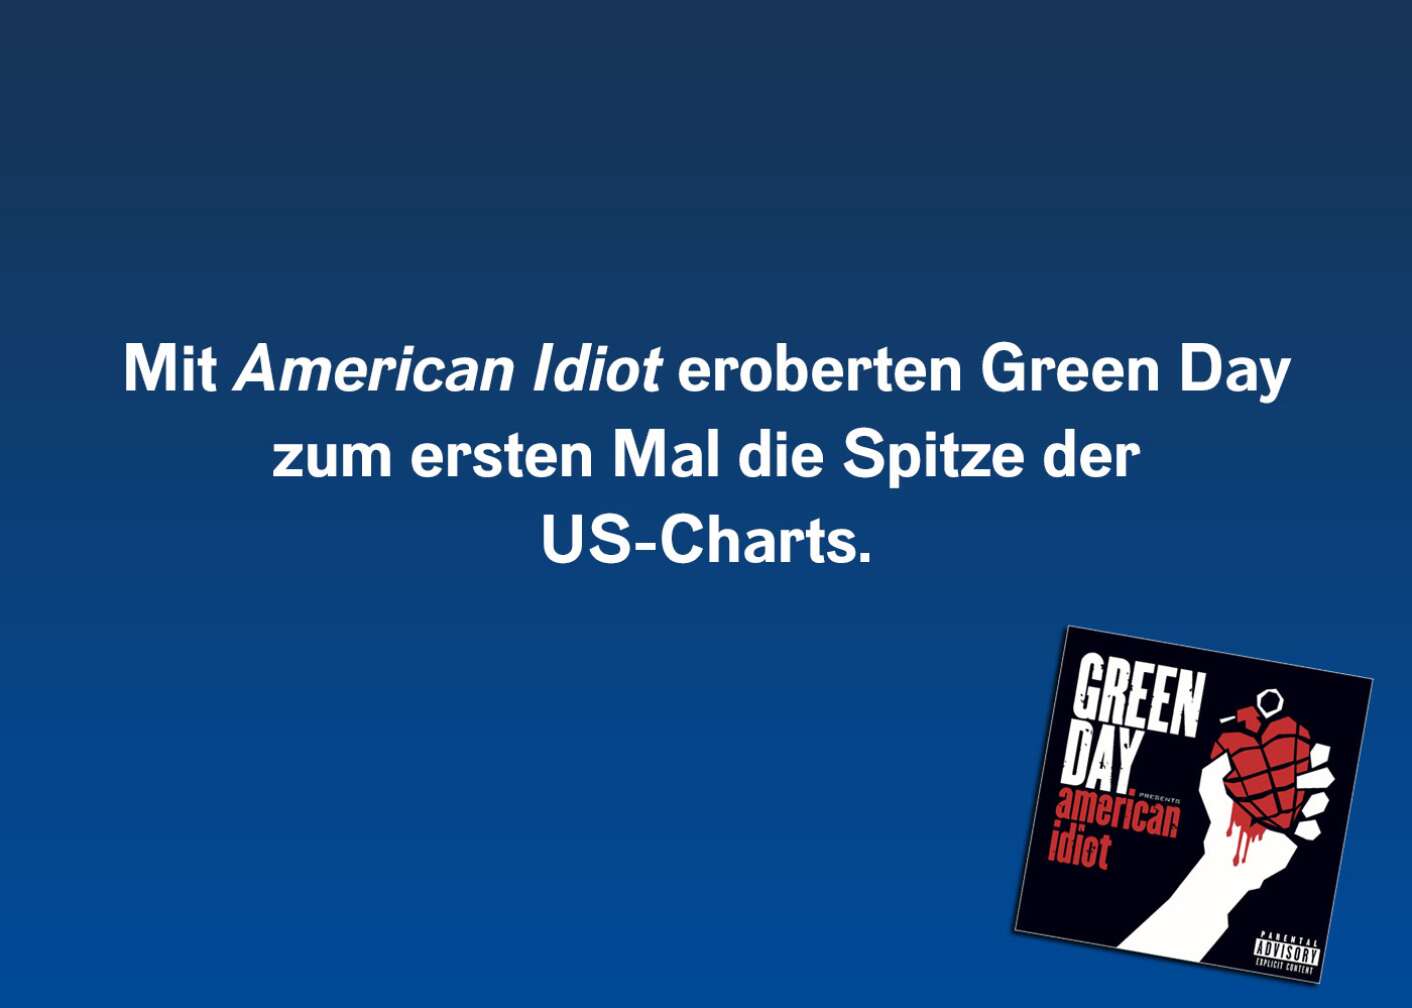 Mit American Idiot eroberten Green Day zum ersten Mal die Spitze der US-Charts.